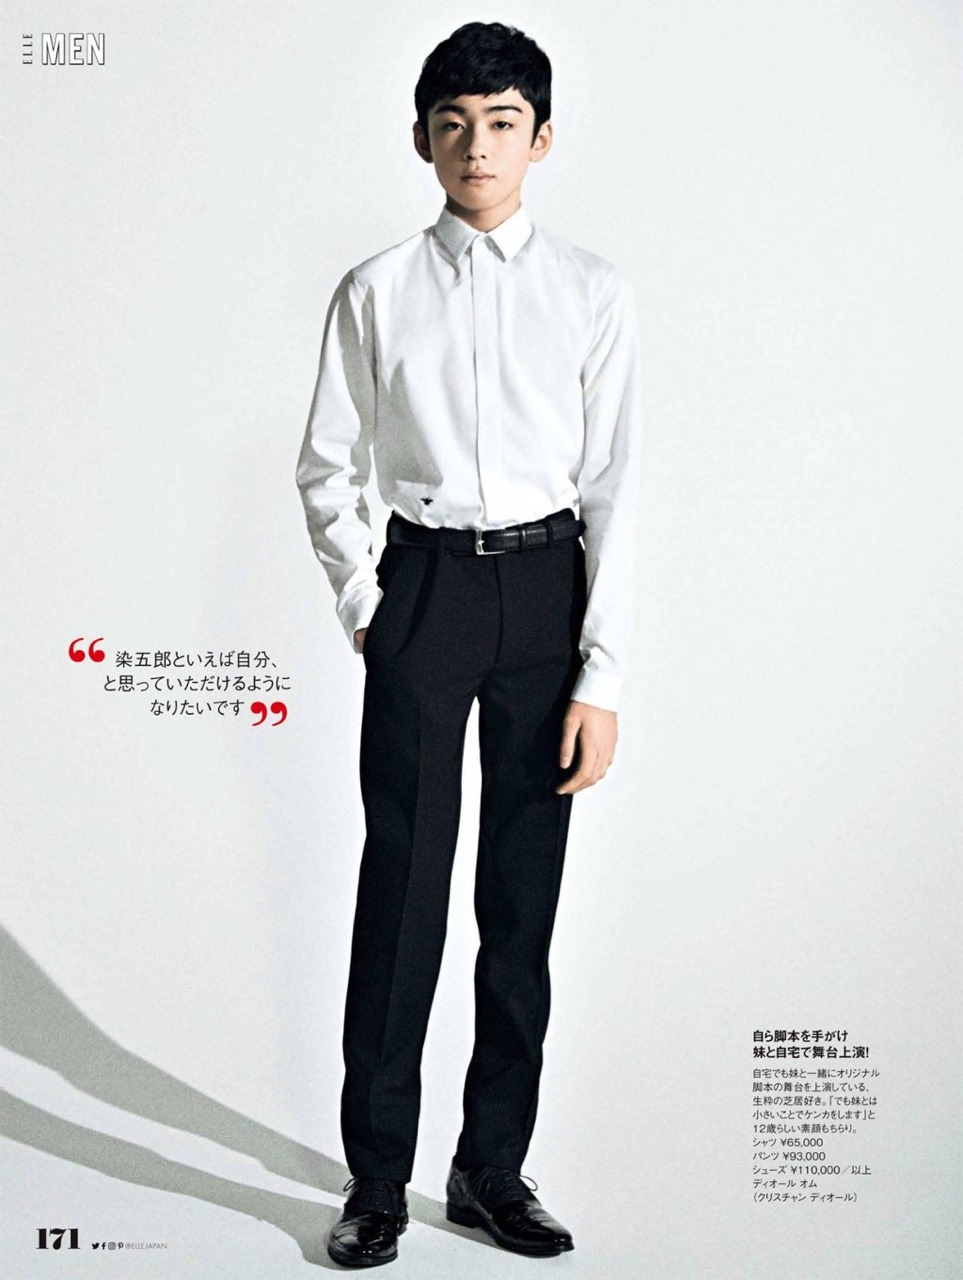 スラっとした立ち姿の八代目市川染五郎のかっこいい画像